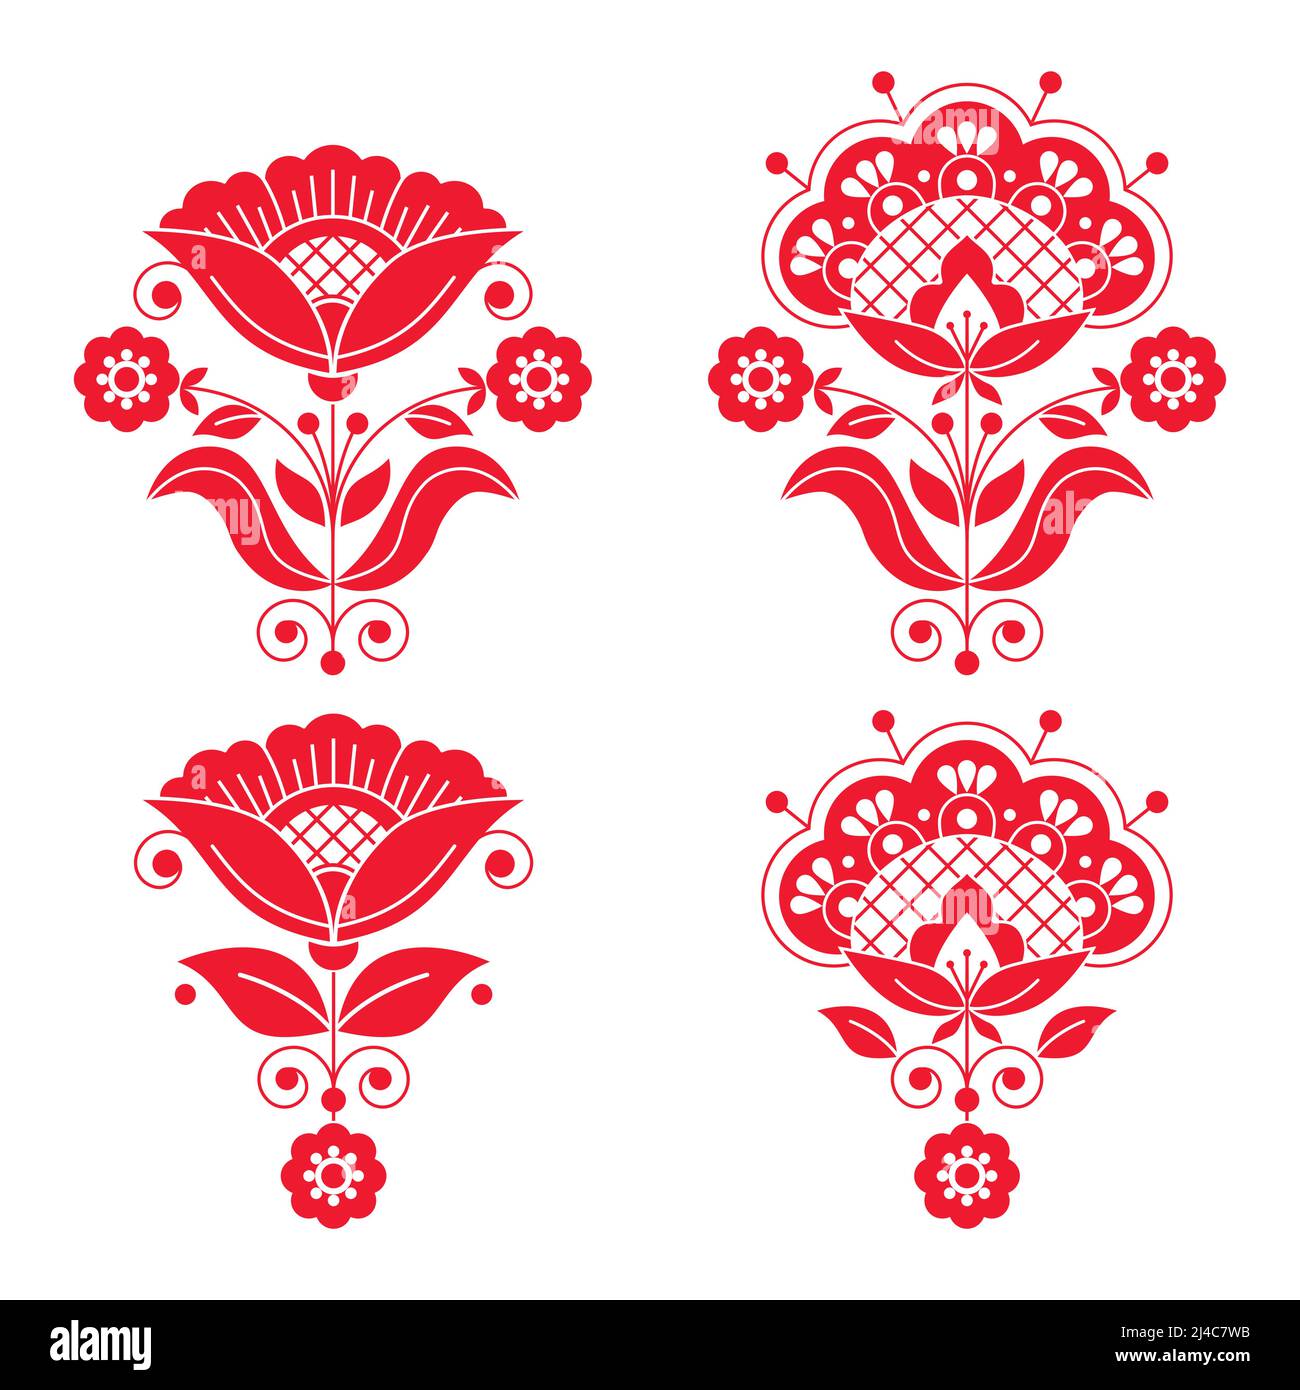 Scandinavian Floral Design Elements, Folk Art Patterns - Long